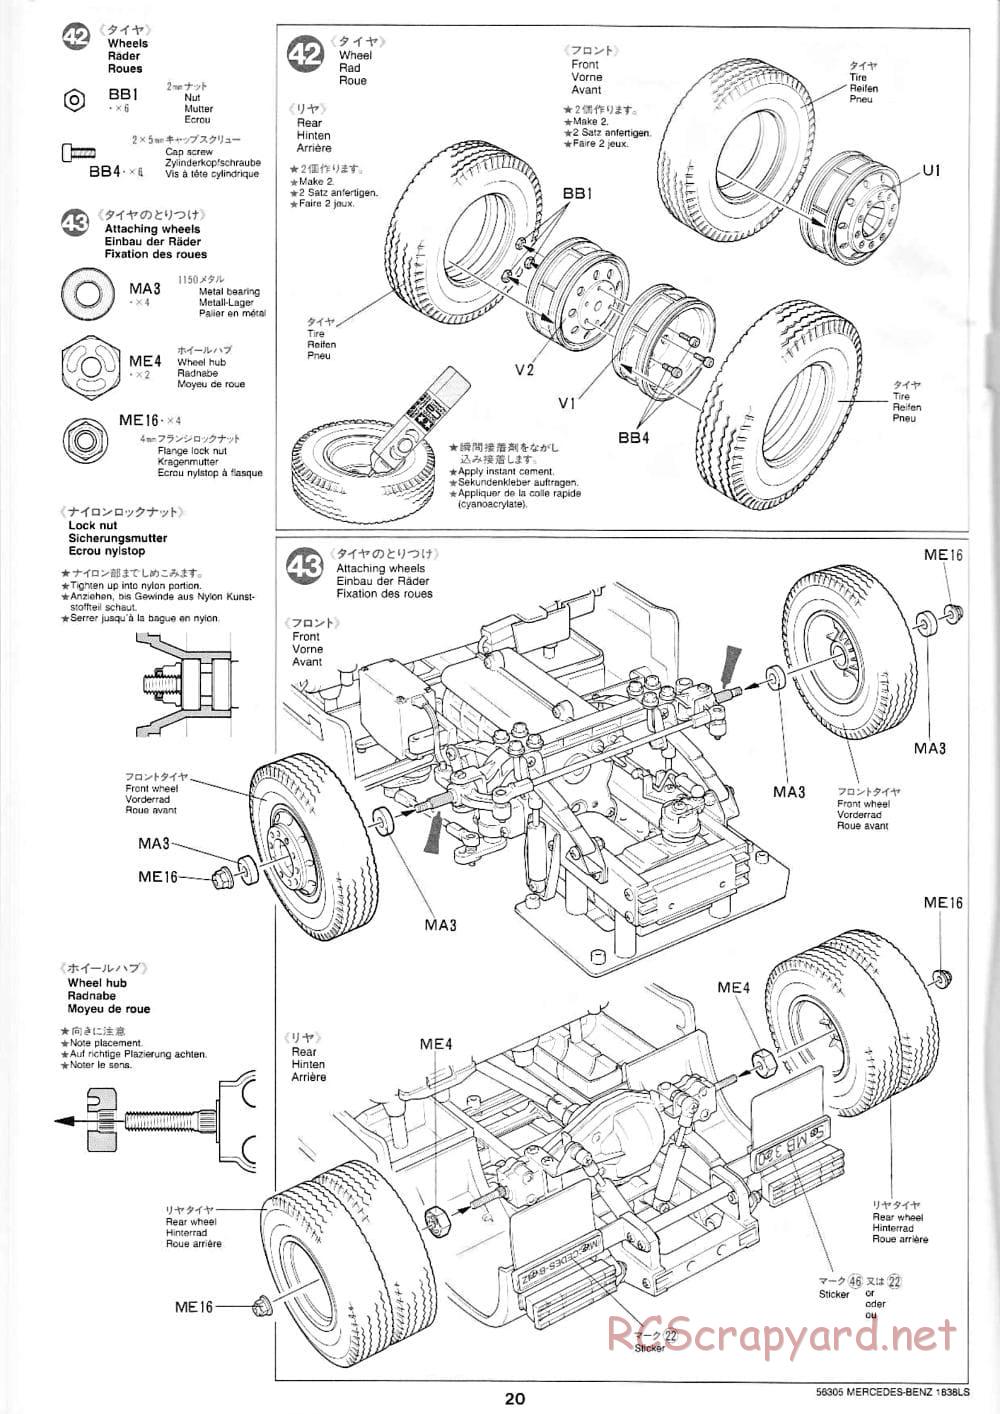 Tamiya - Mercedes-Benz 1838LS - Manual - Page 20